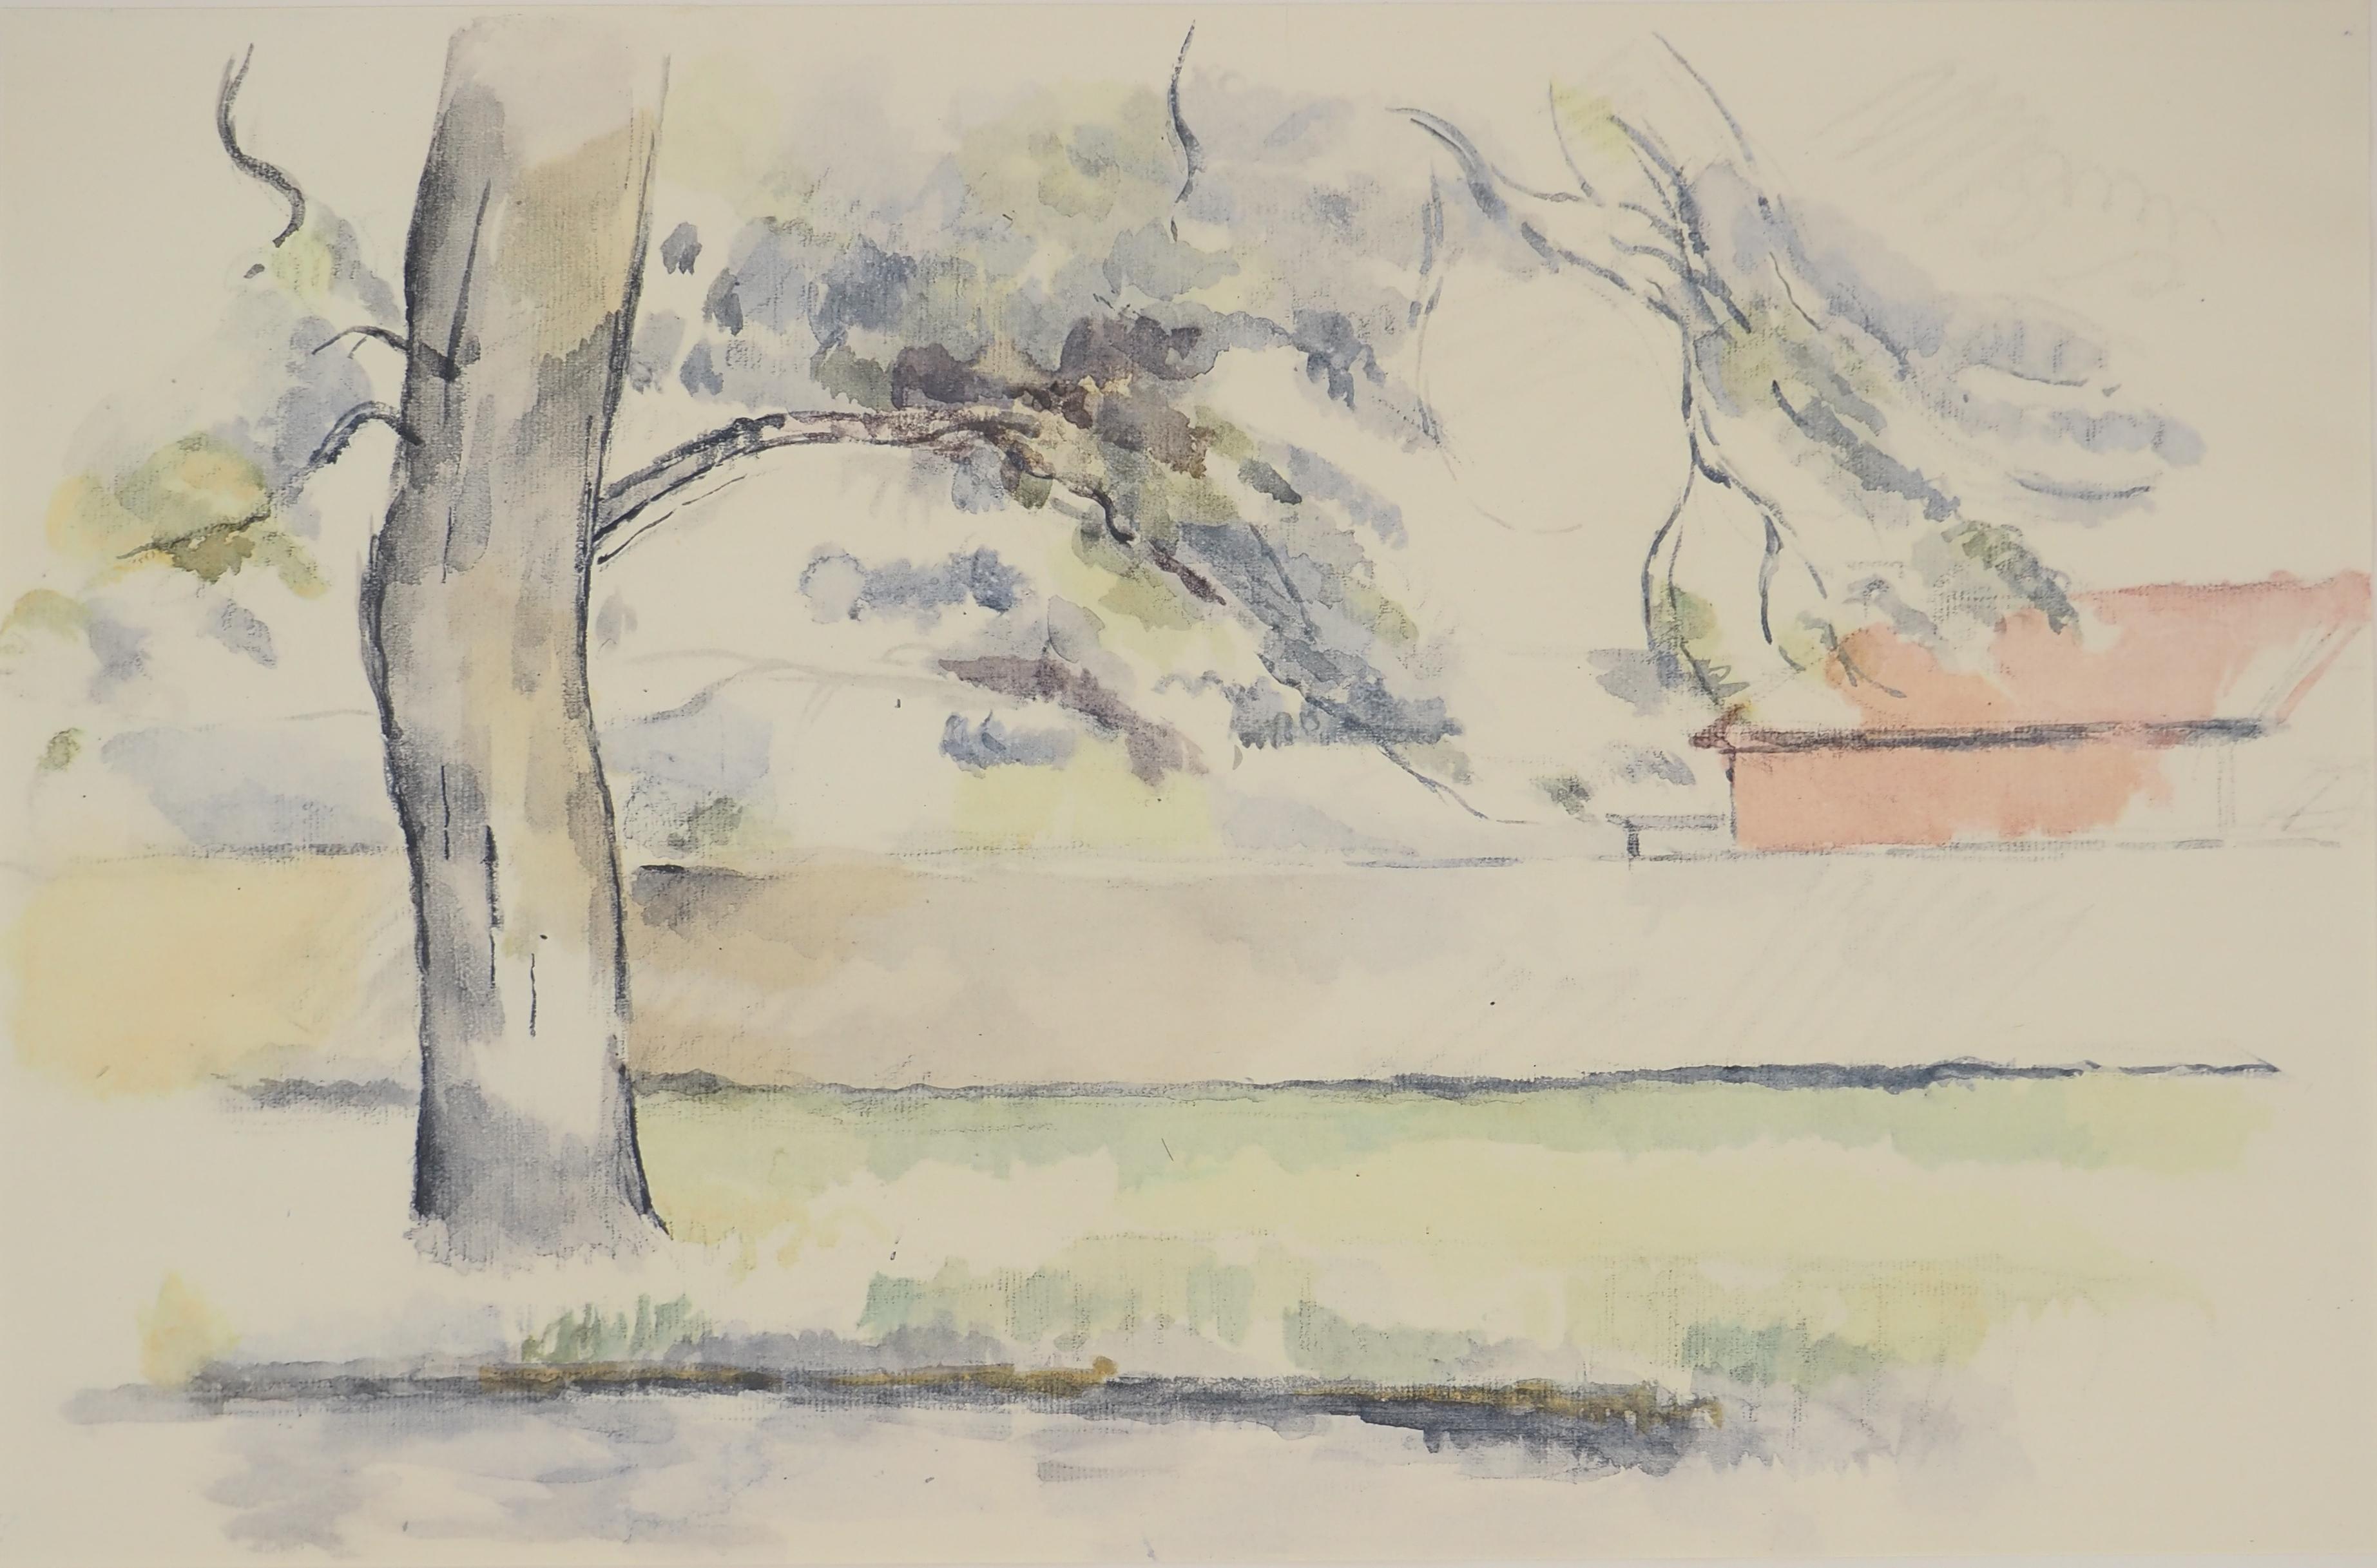 Kleiner französischer Garten – Lithographie, 1971 – Print von Paul Cézanne